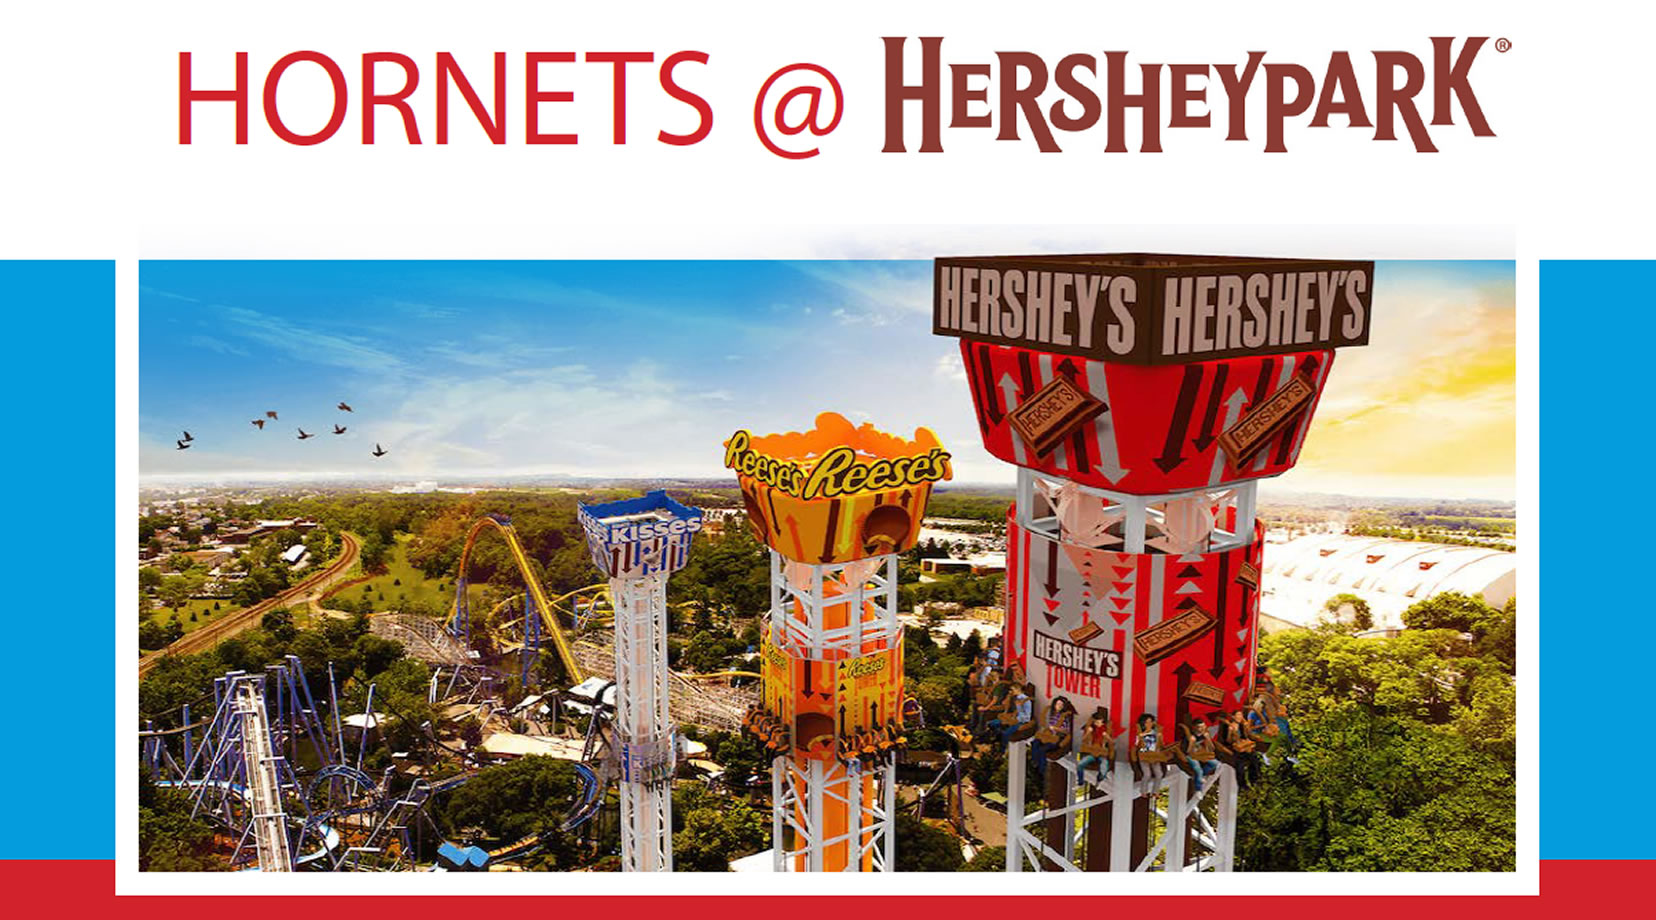 Join us for Hornets @ Hersheypark